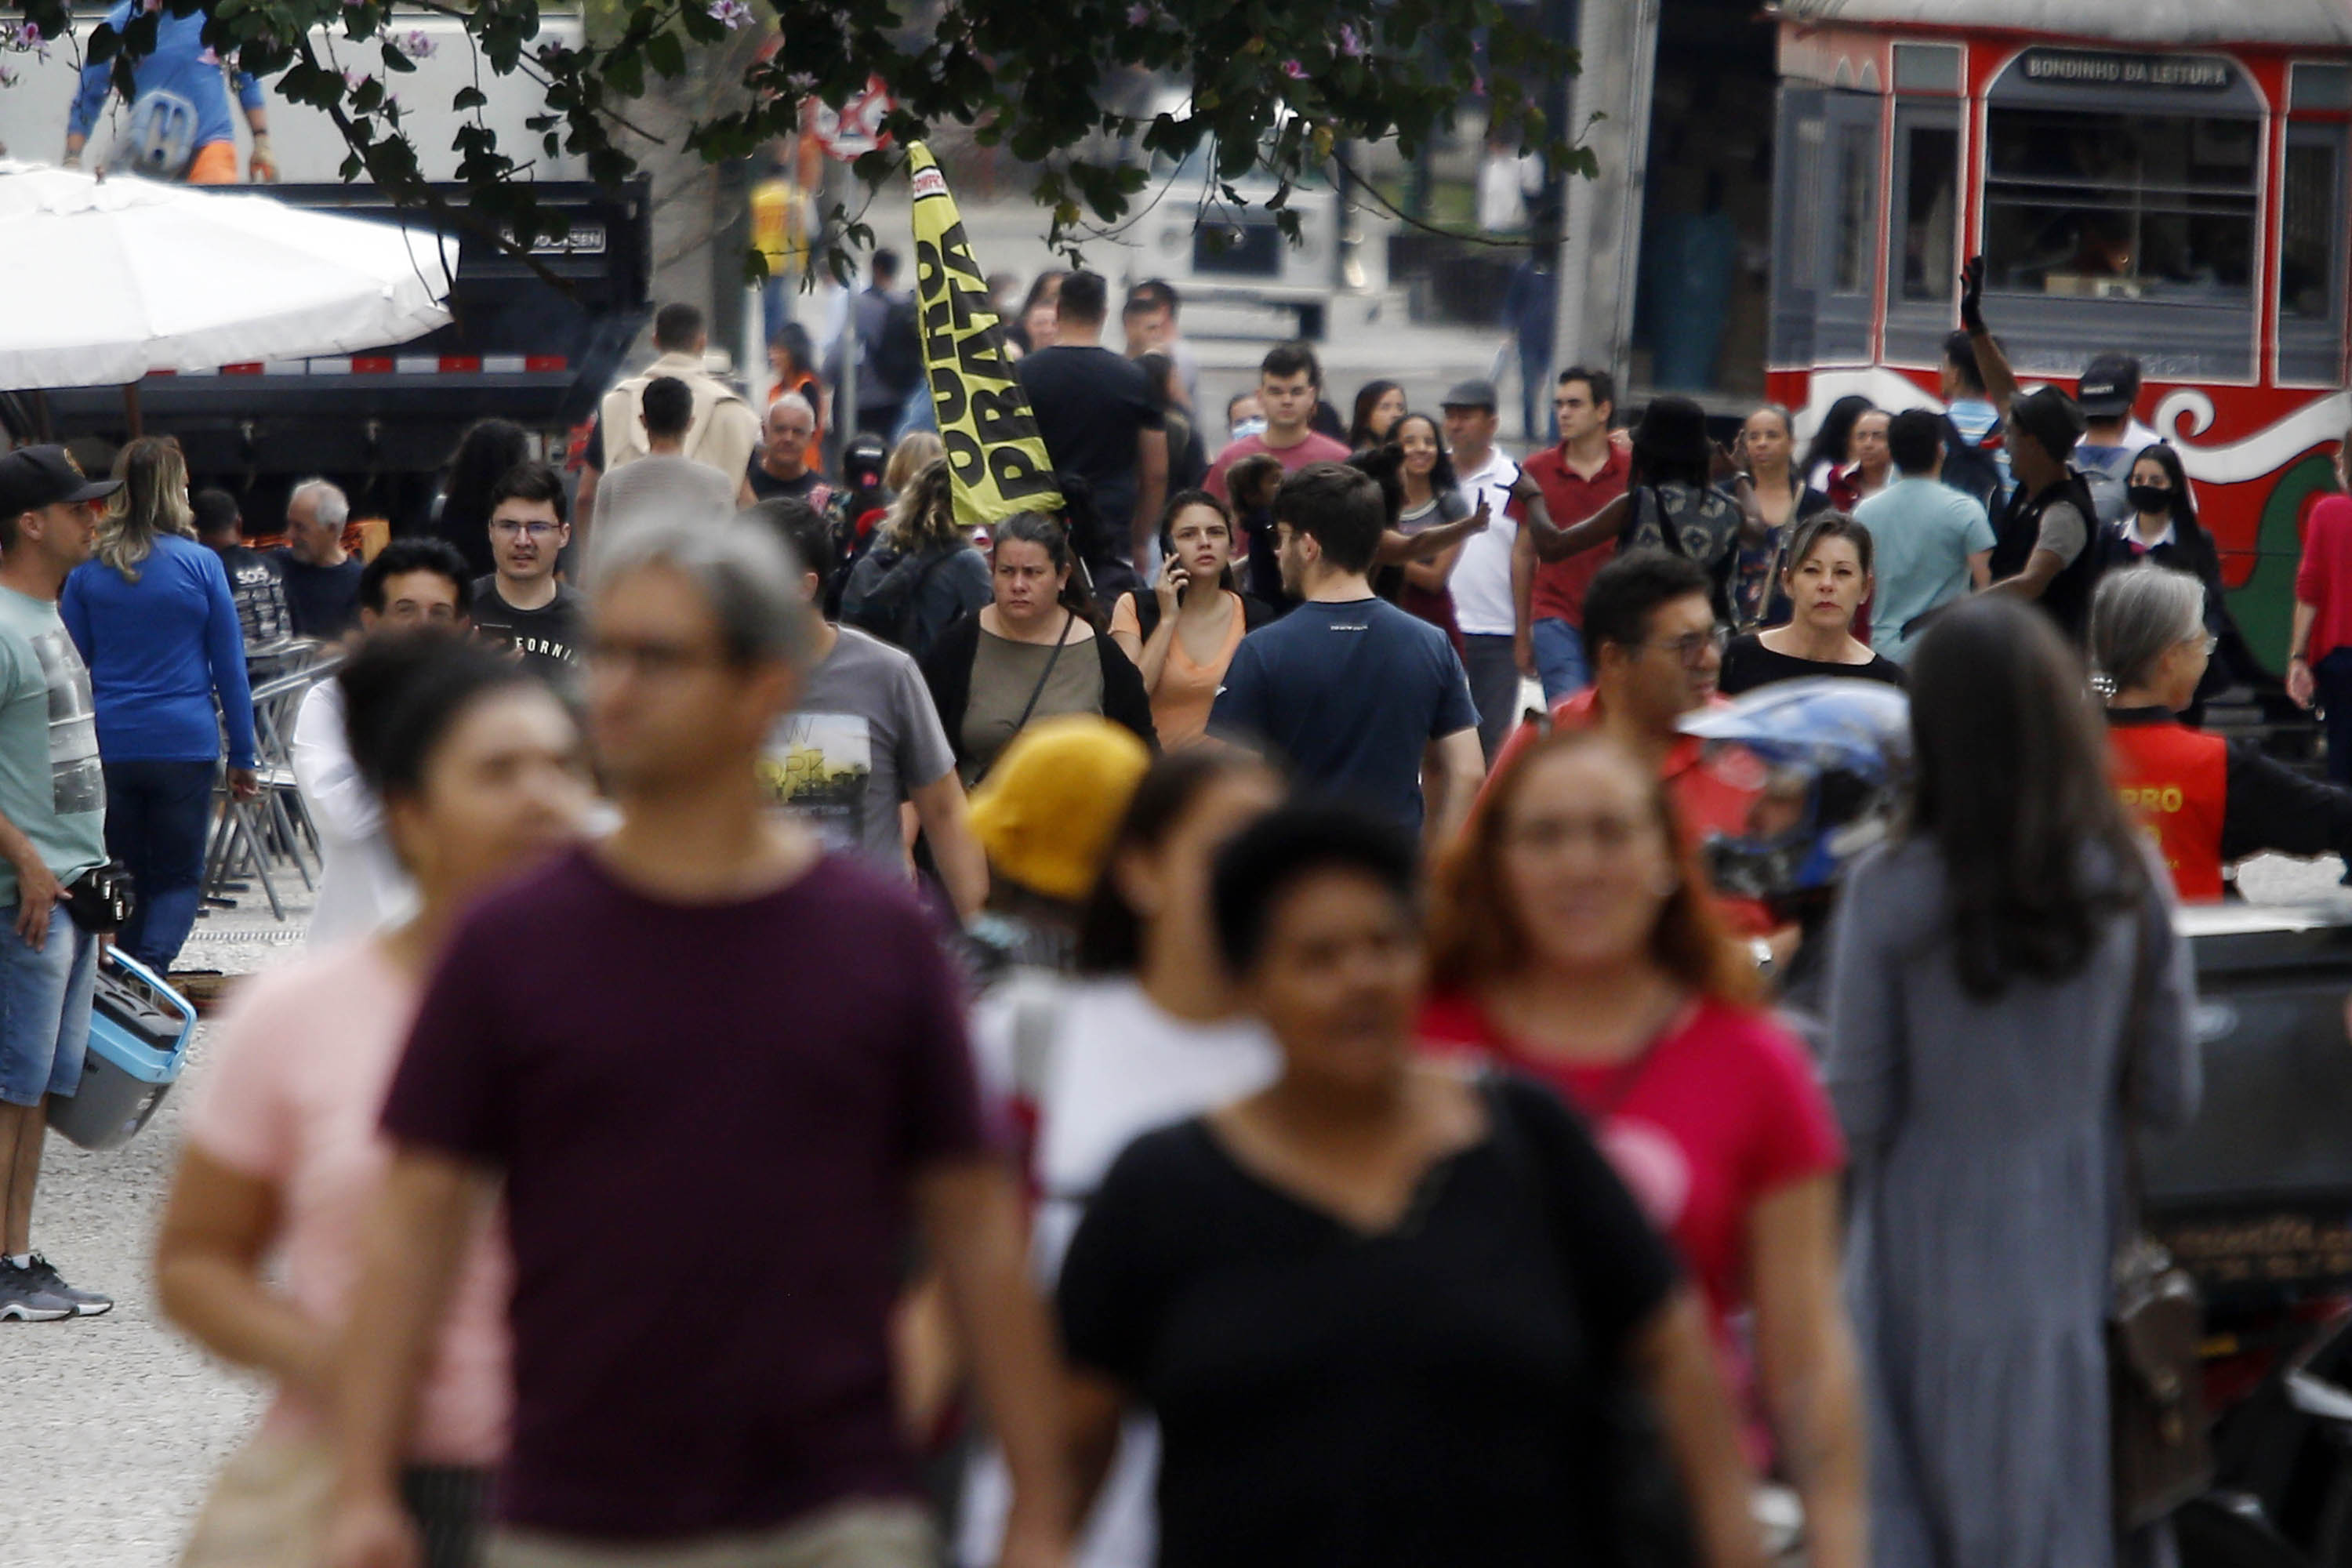 Salário dos trabalhadores paranaenses cresce 6,2% no primeiro trimestre